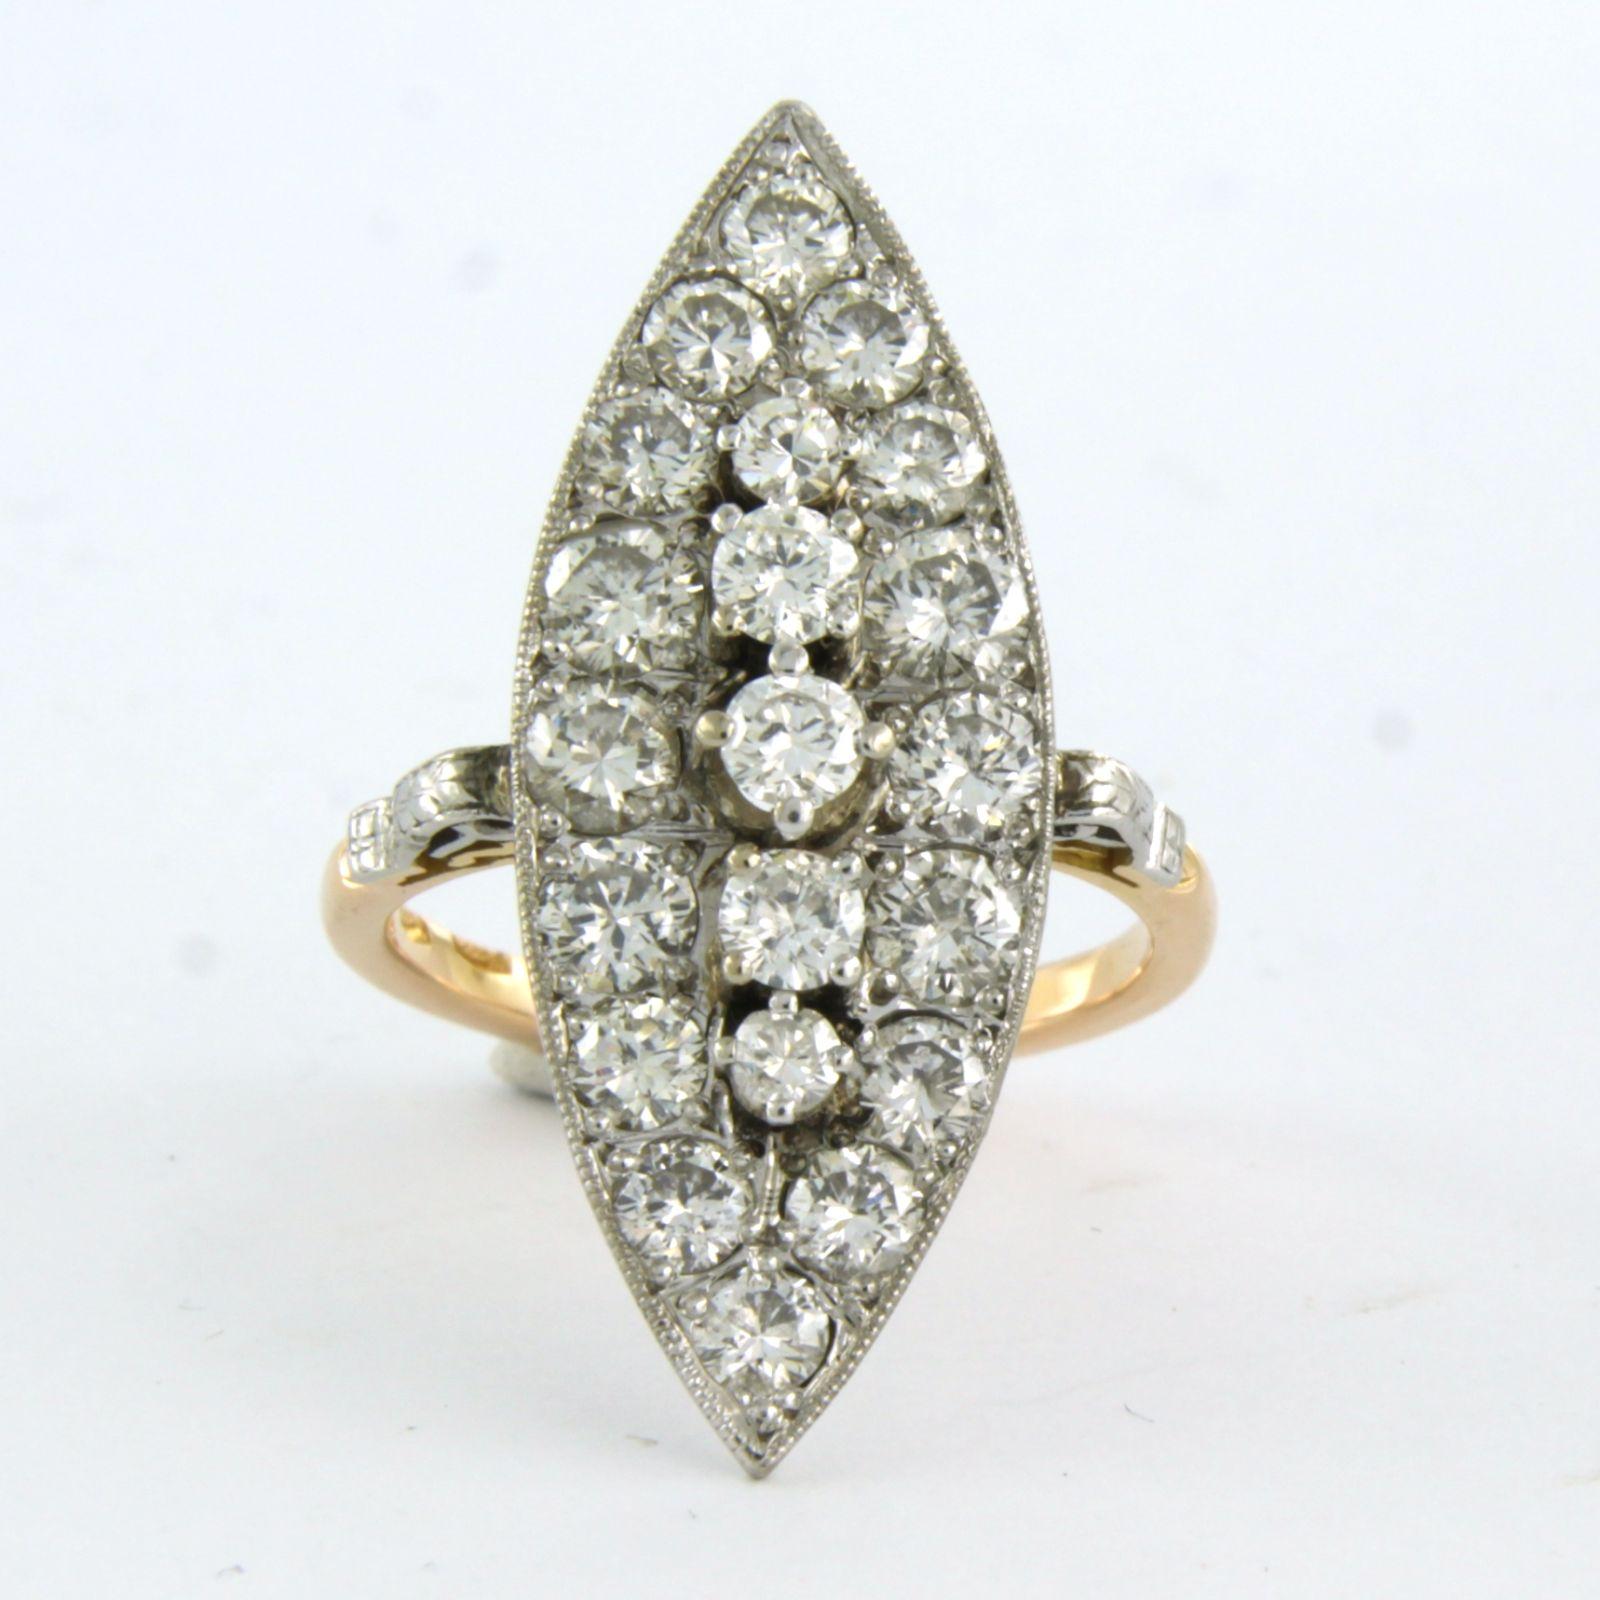 Bague marquis en or bicolore 18k sertie de diamants taille brillant jusqu'à . 2.00ct - F/G - VS/SI - taille de bague U.S. 5.25 - EU. 16(50)

description détaillée :

le haut de l'anneau mesure 3,0 cm sur 1,1 cm de large et 0,6 cm de haut

Taille de